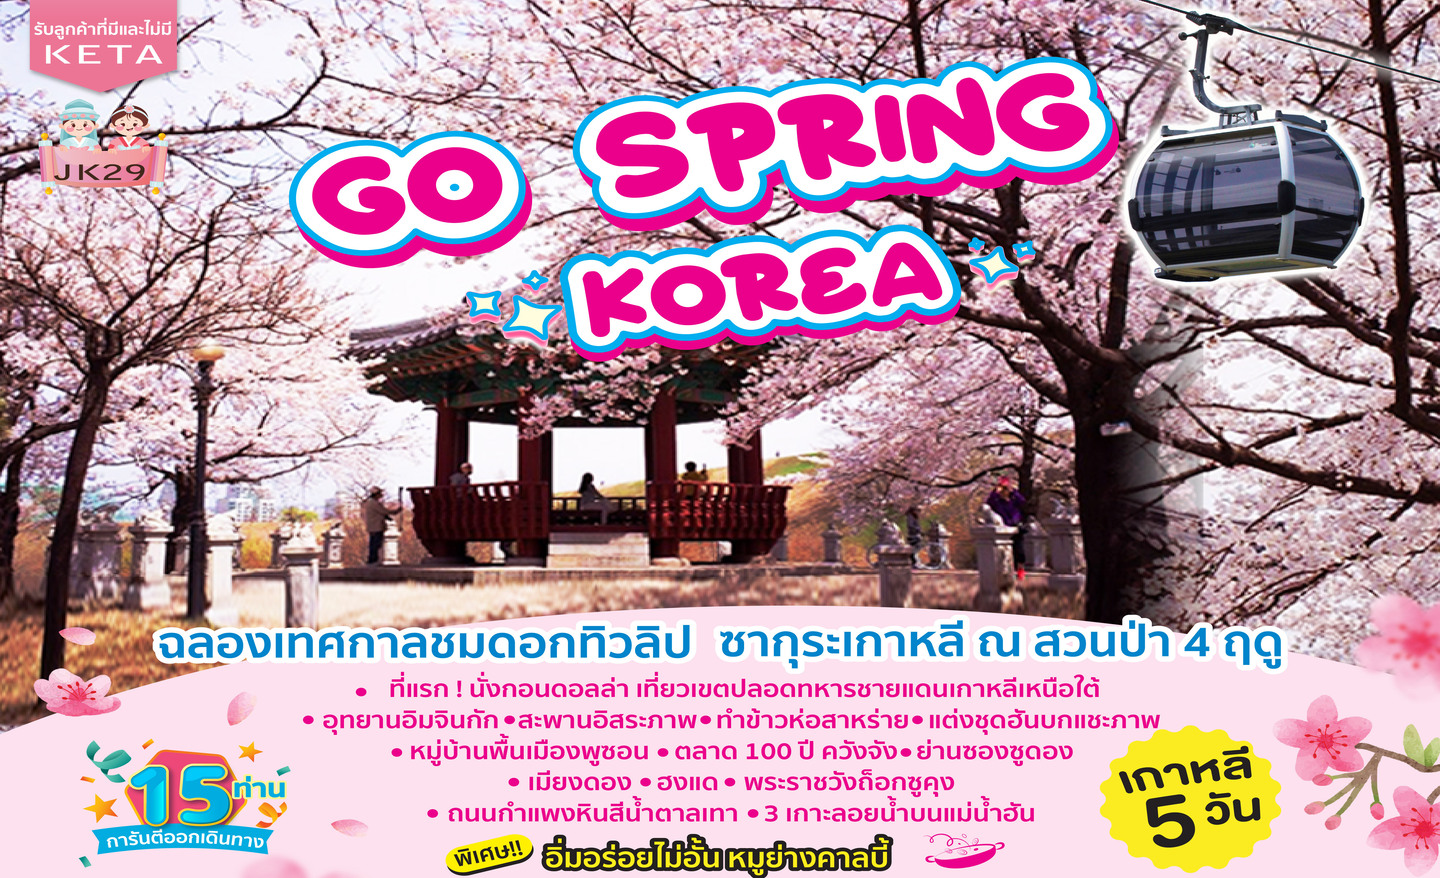 ทัวร์เกาหลี Go Spring Korea (เม.ย-พ.ค. 66)